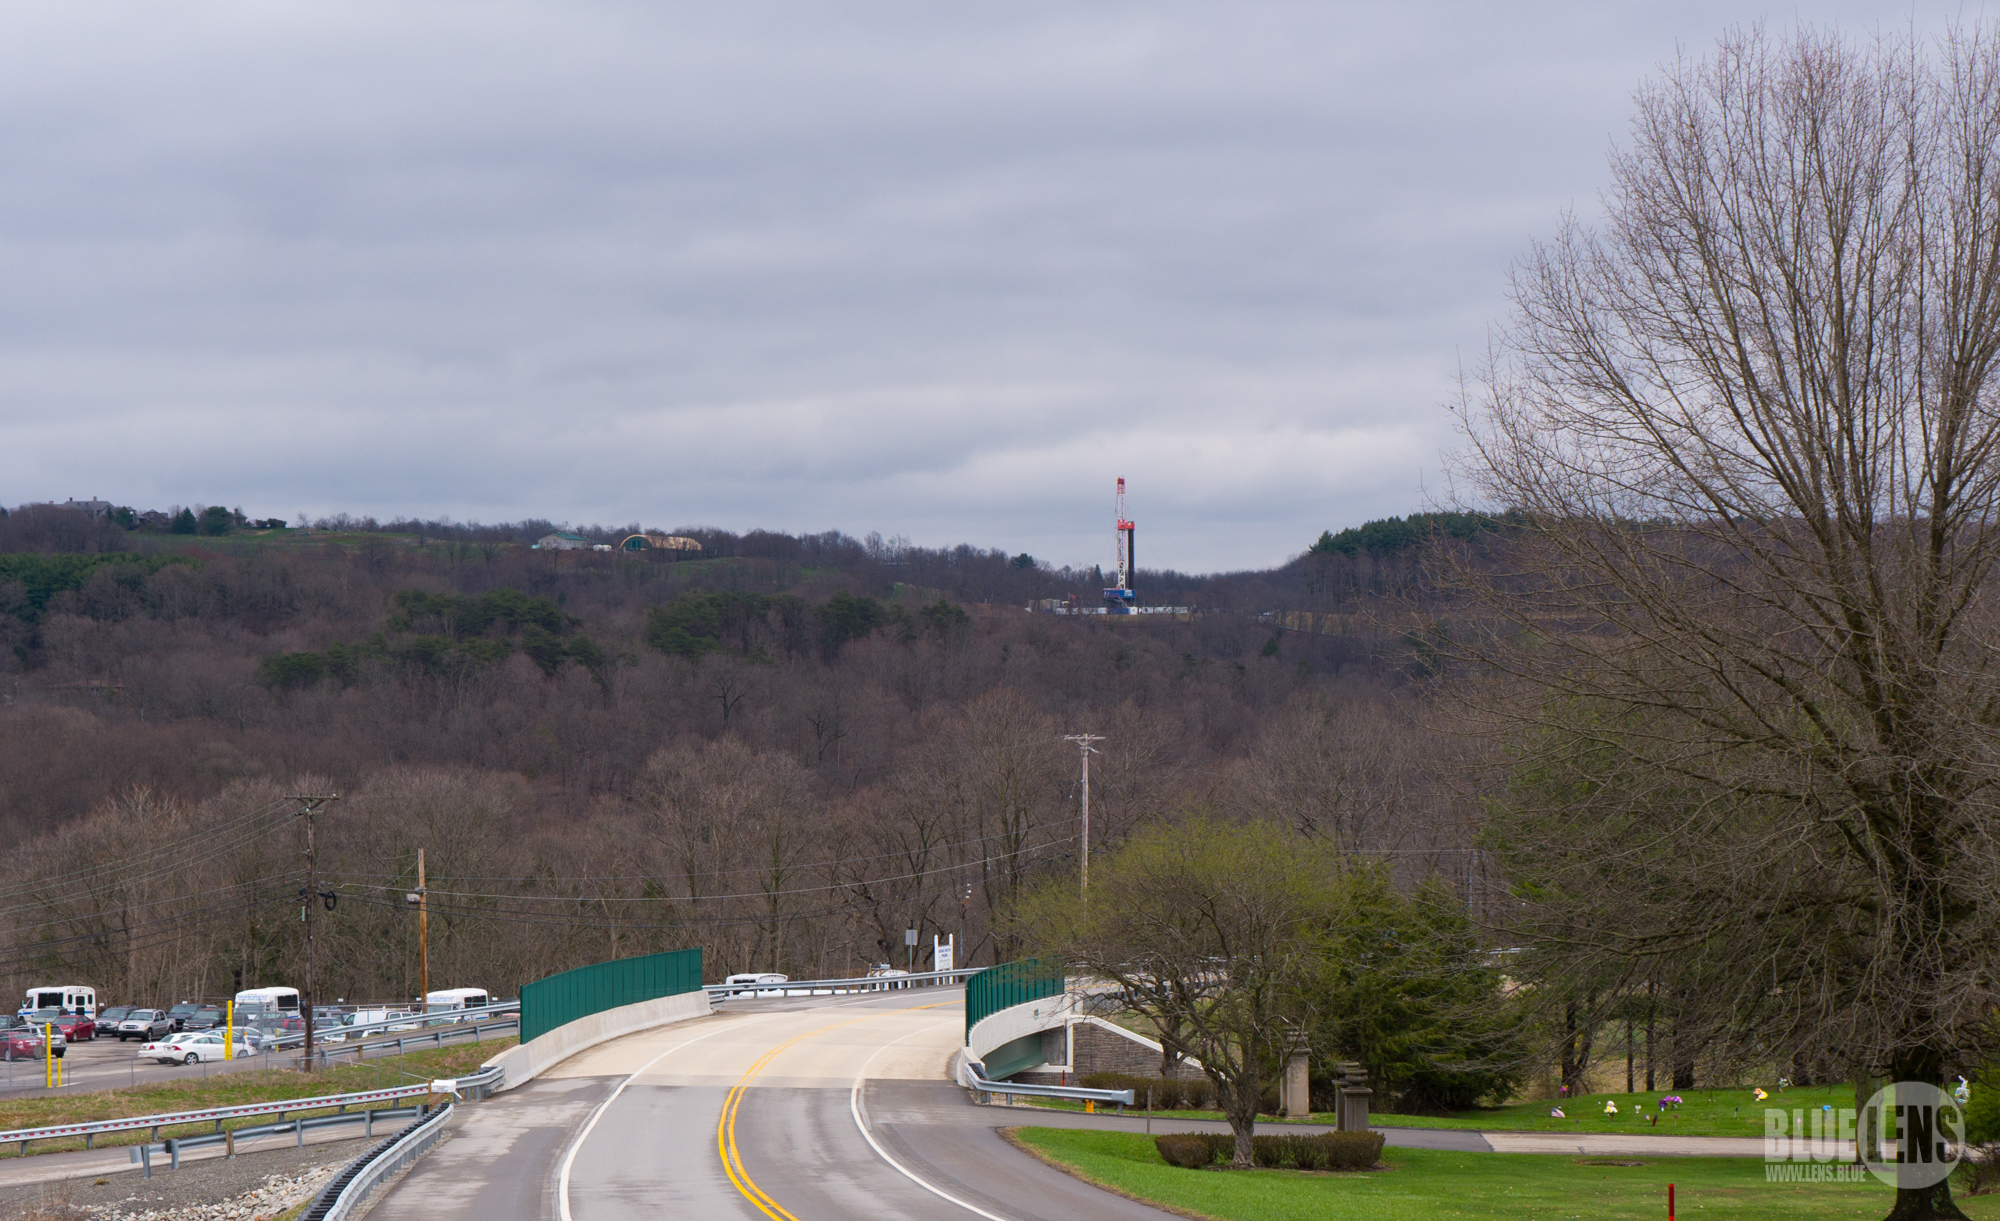 Uma fotografia mostra uma paisagem rural e, na colina ao longe, há uma grande furadeira de alta tecnologia.